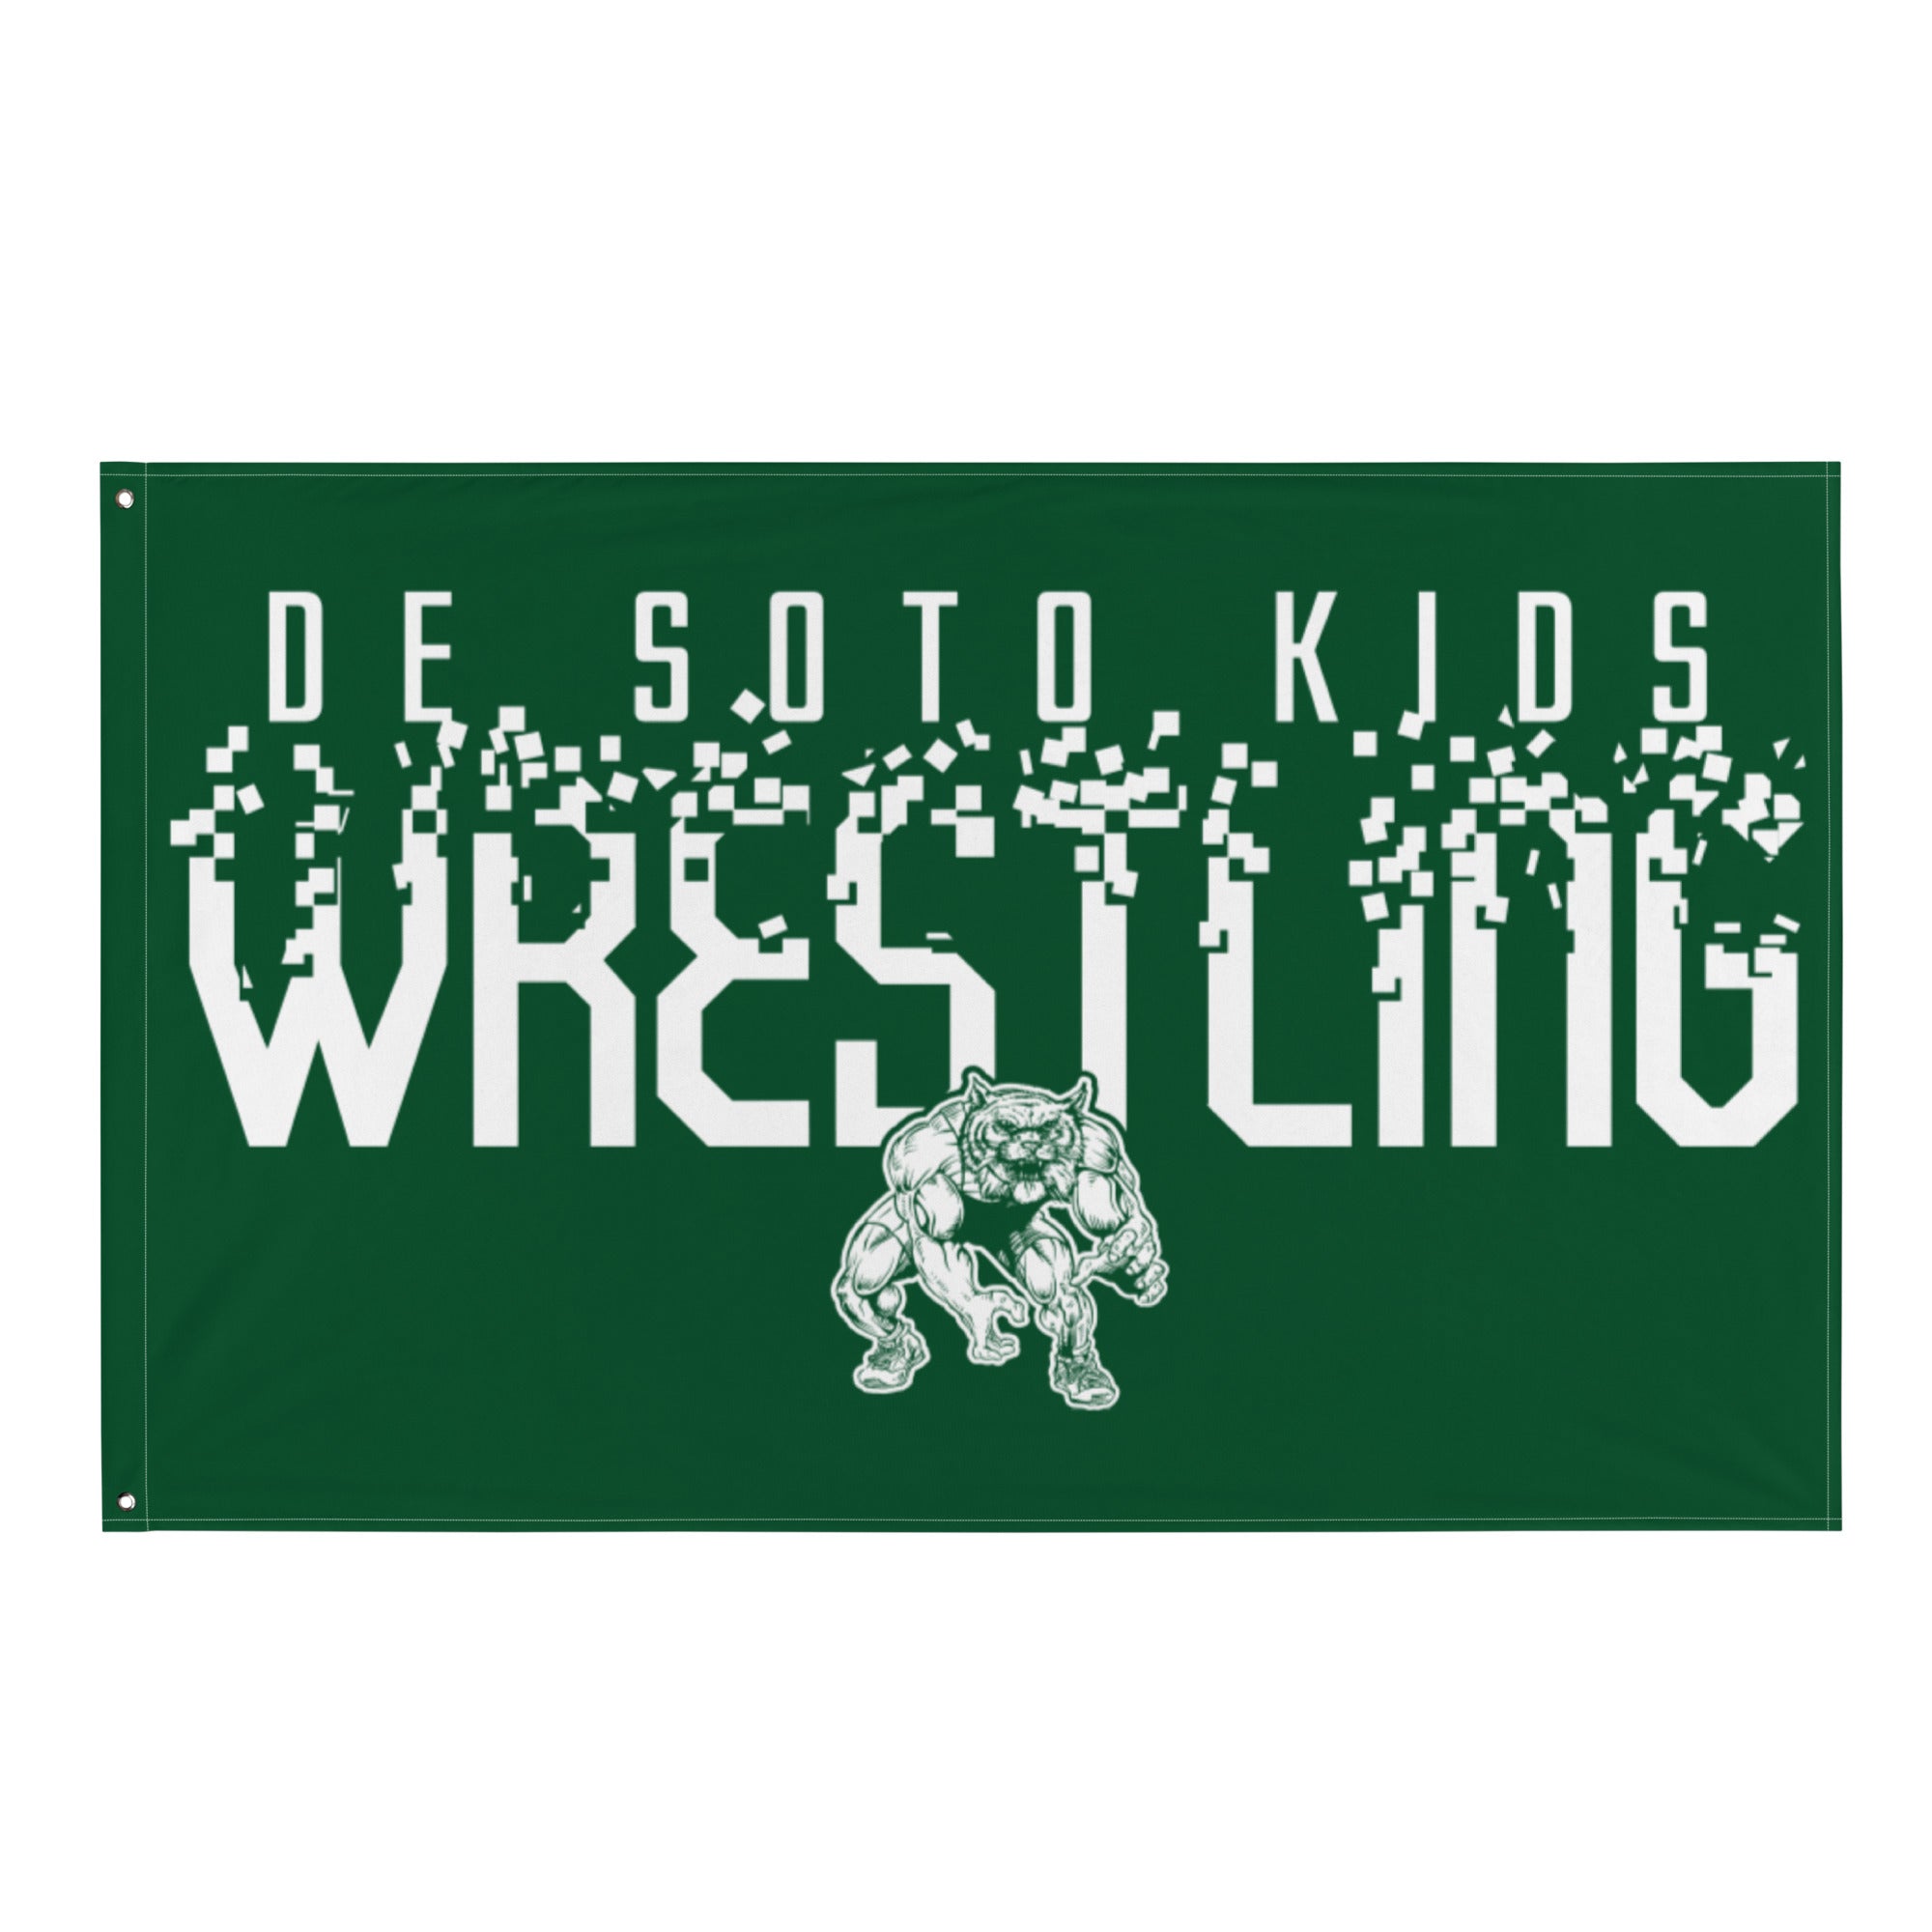 De Soto Kids Wrestling Forest All-Over Print Flag